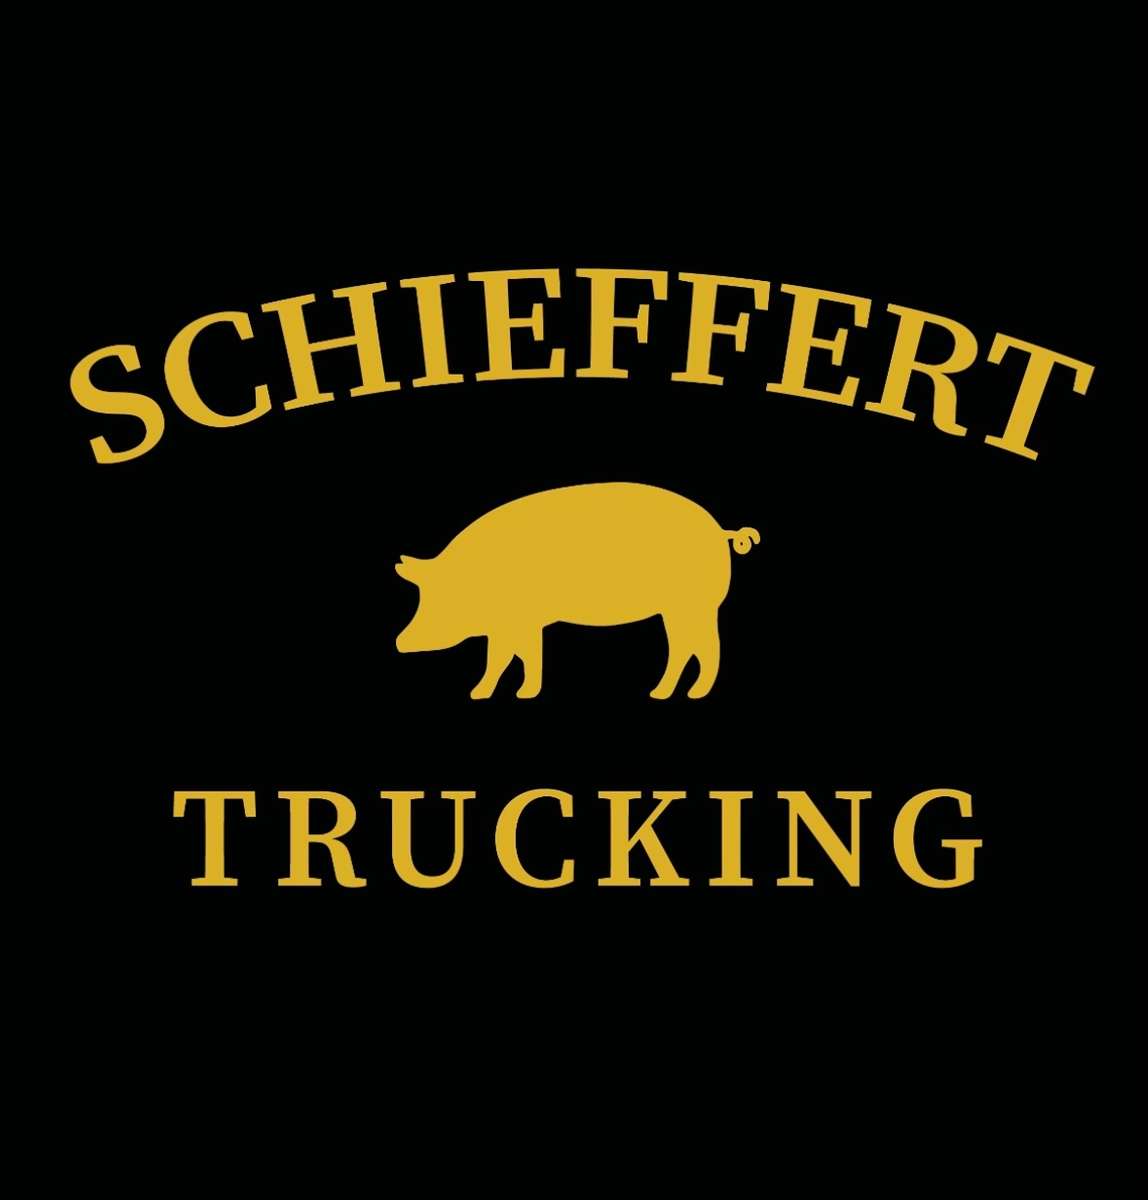 Schieffert Trucking 